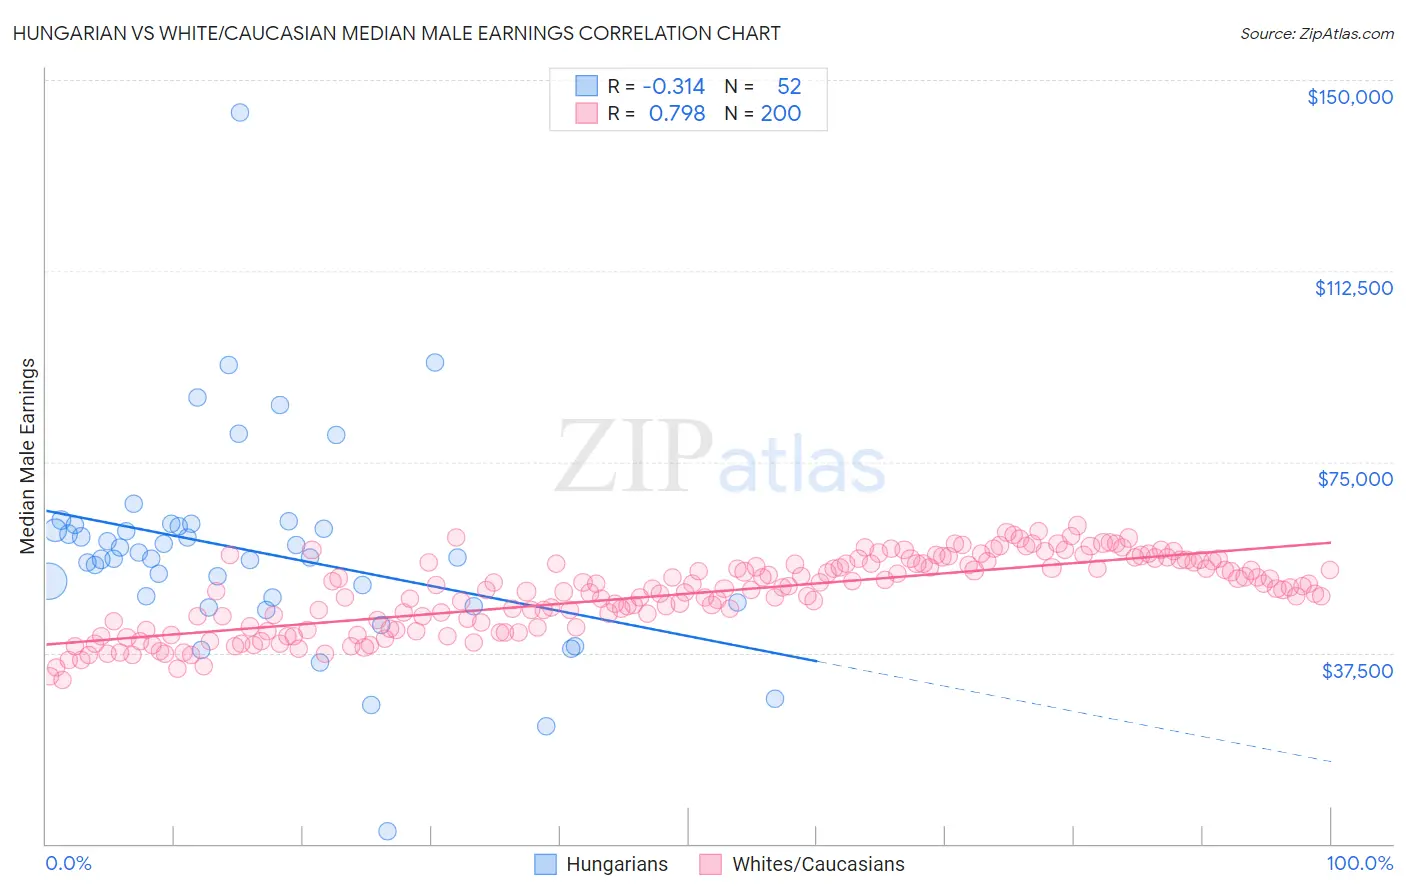 Hungarian vs White/Caucasian Median Male Earnings